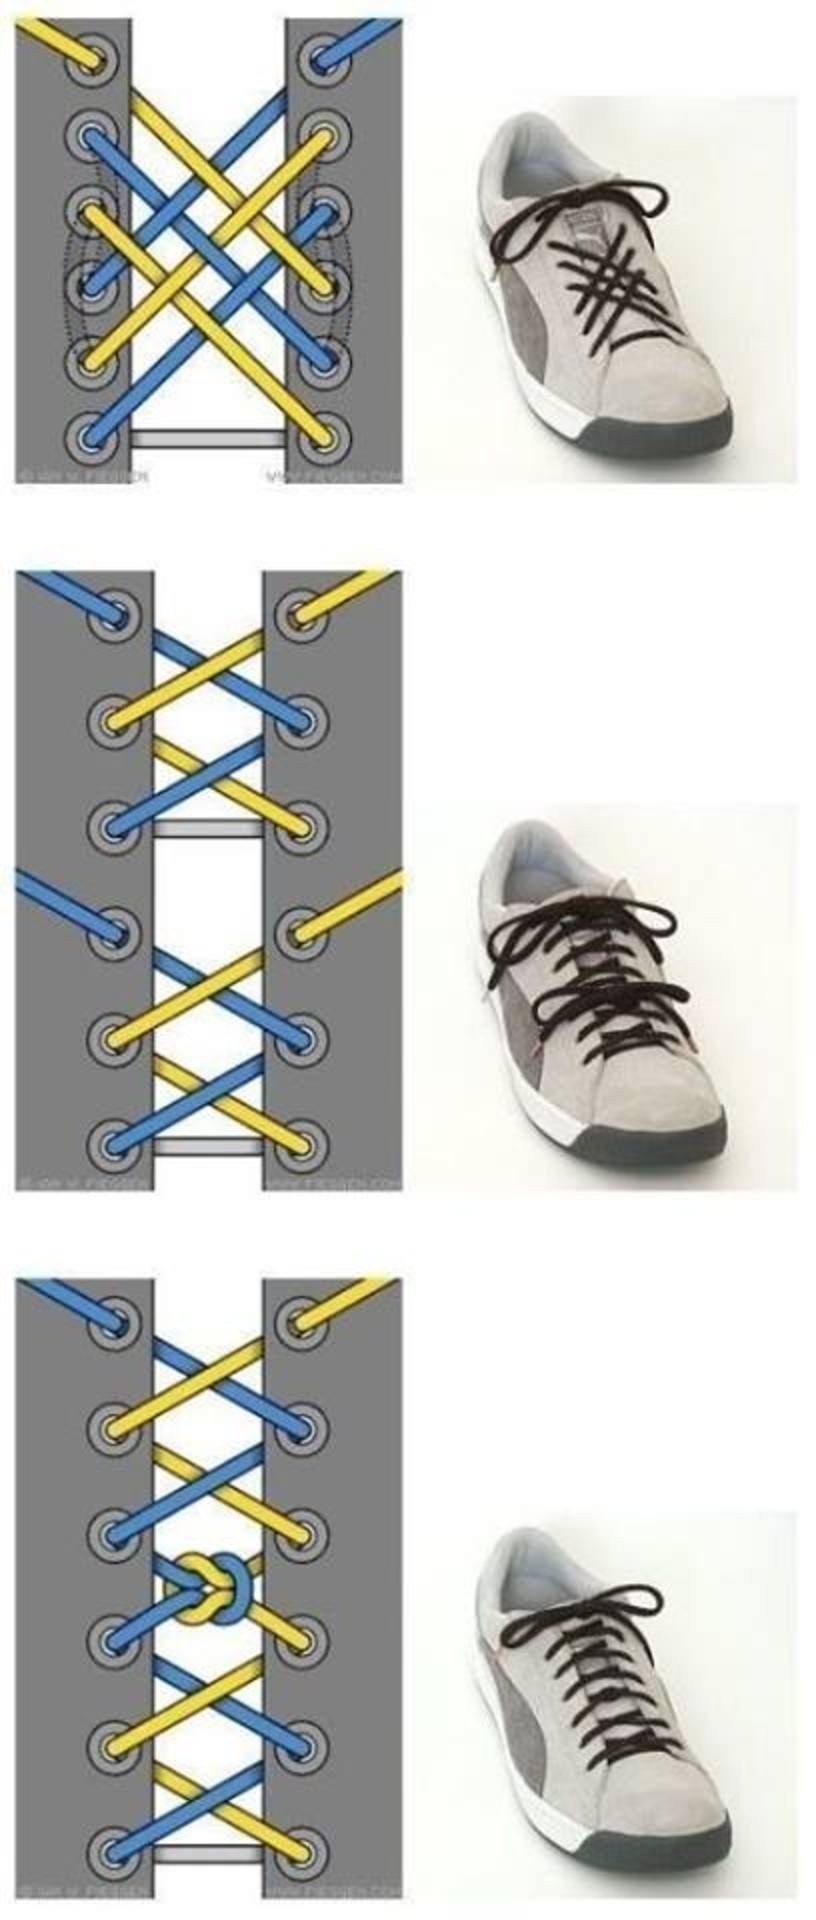 Шнуровка кроссовок с 7. Типы шнурования шнурков на 5 дырок. Шнурки зашнуровать 5 дырок. Способы зашнуровать кроссовки 5 дырок. Шнурование молния 5 дырок.